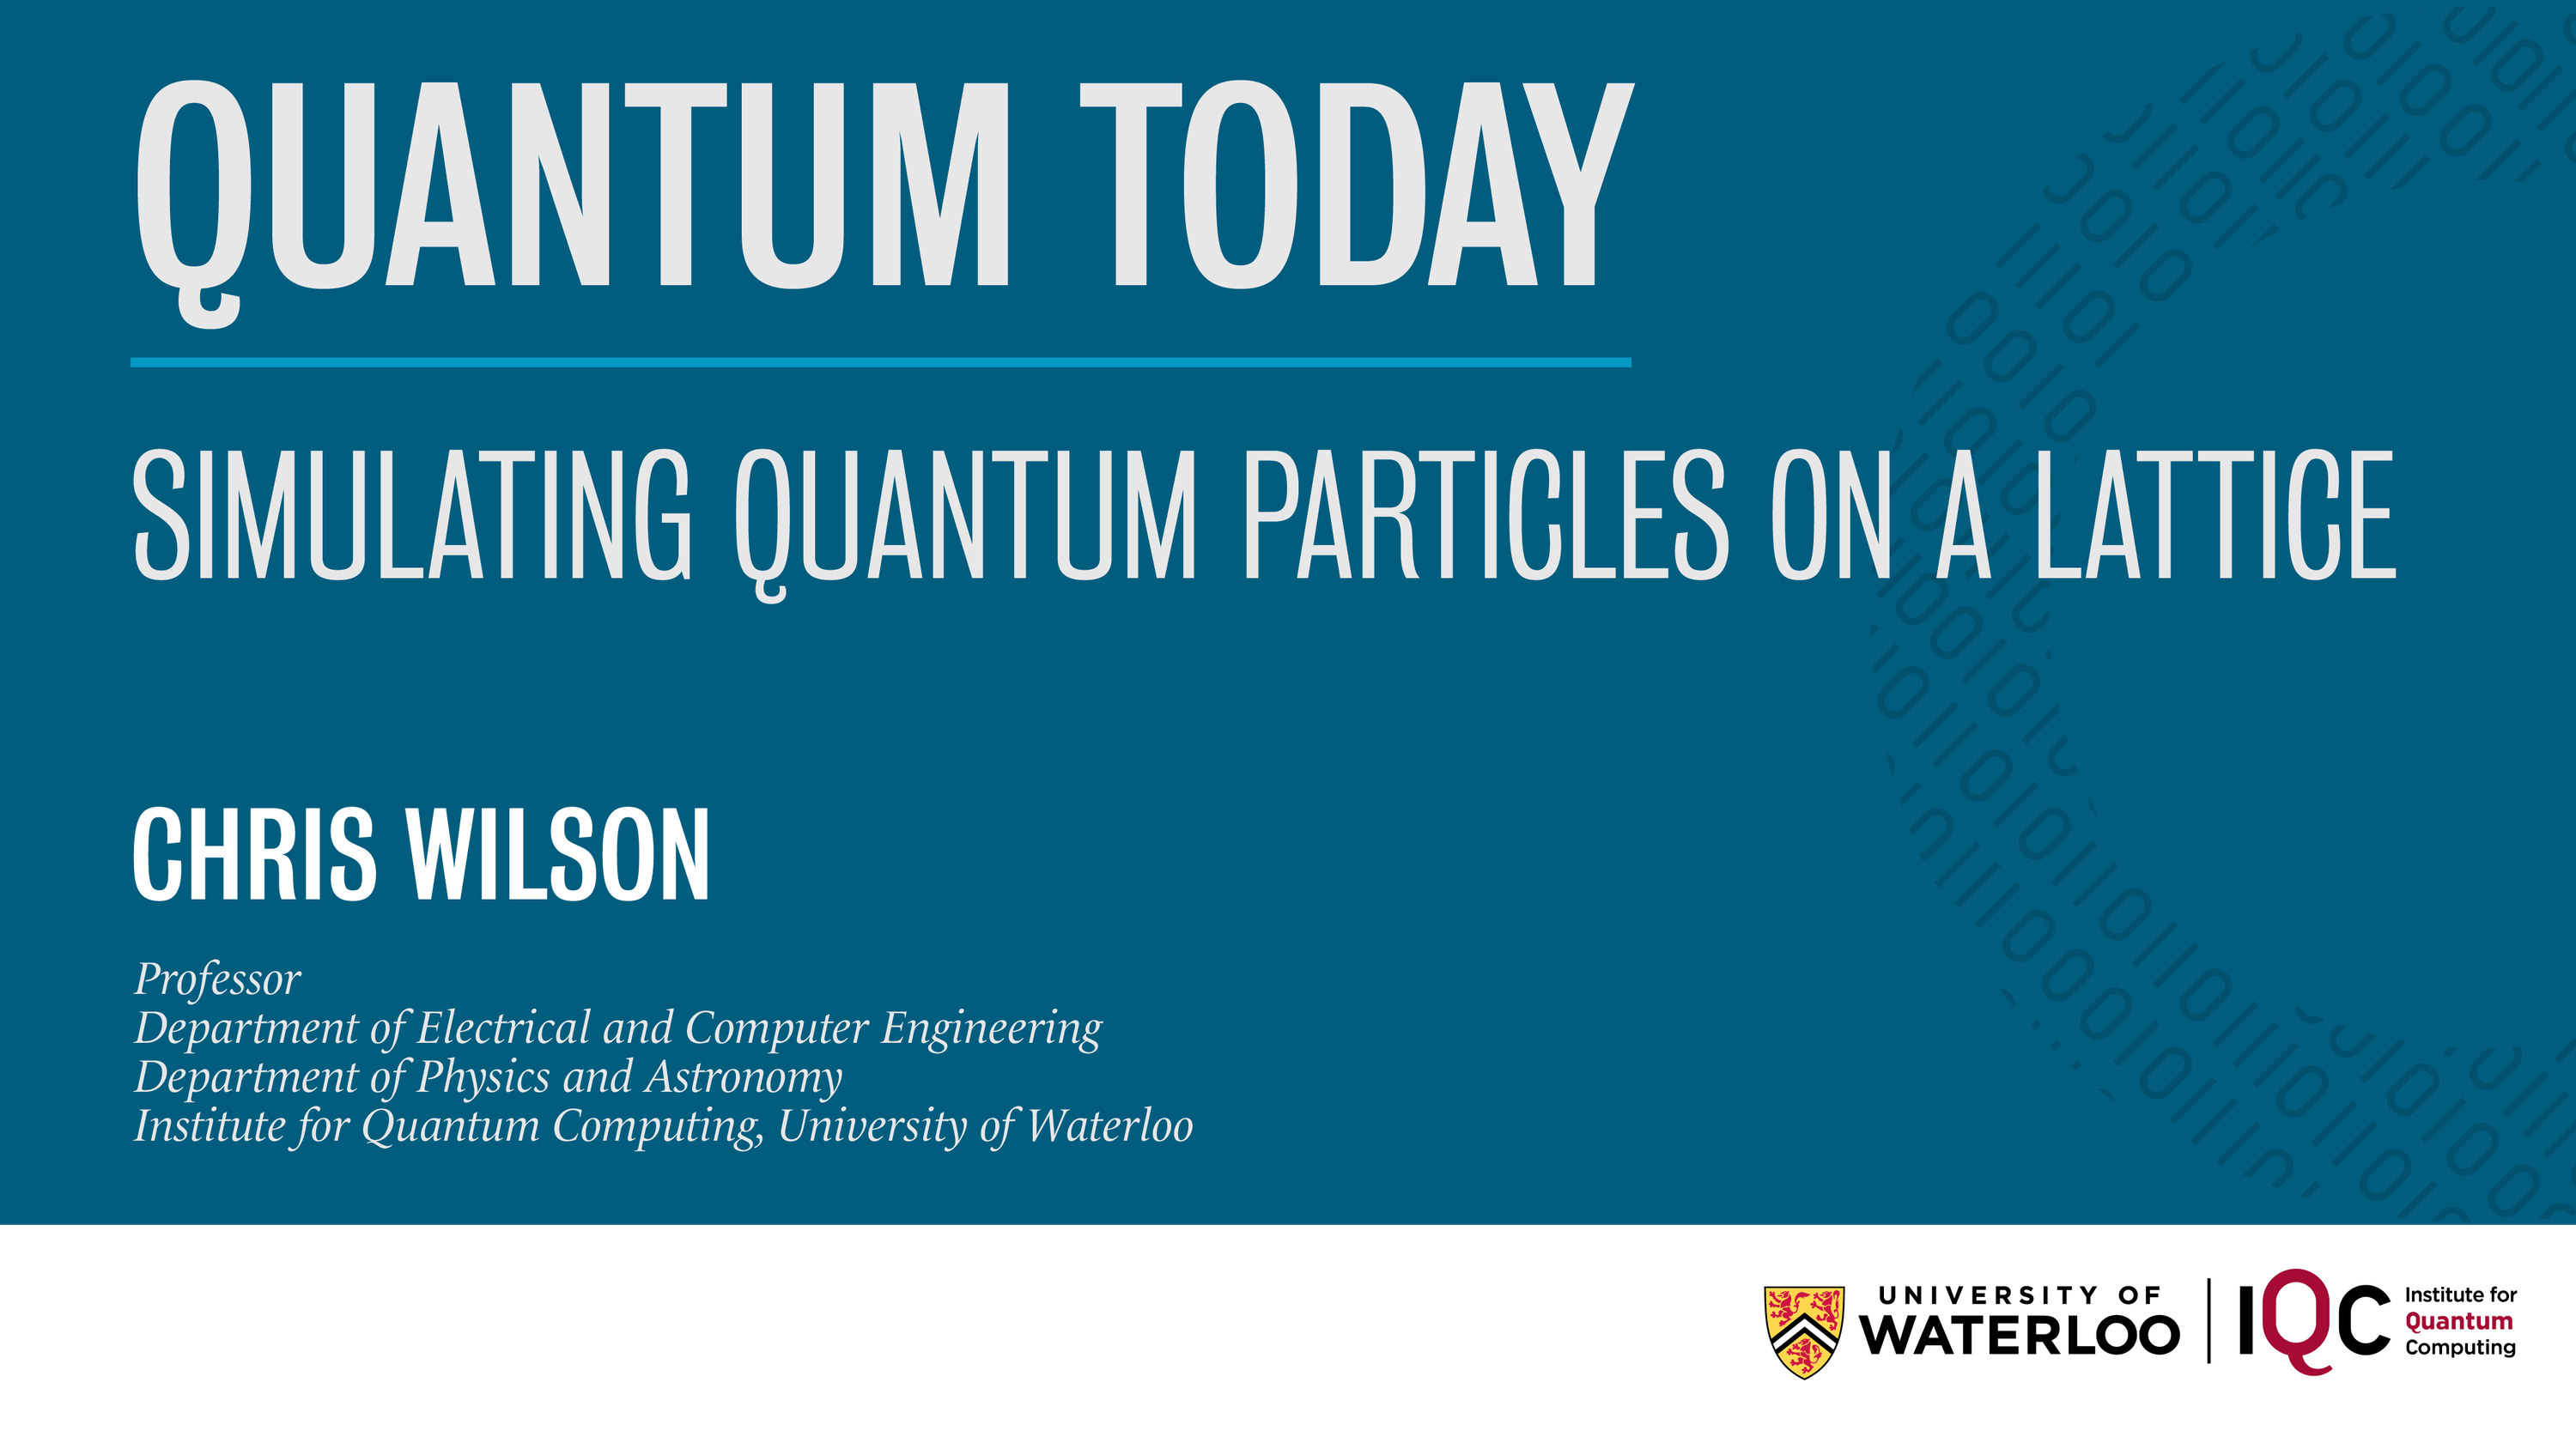 Quantum Today event image blue